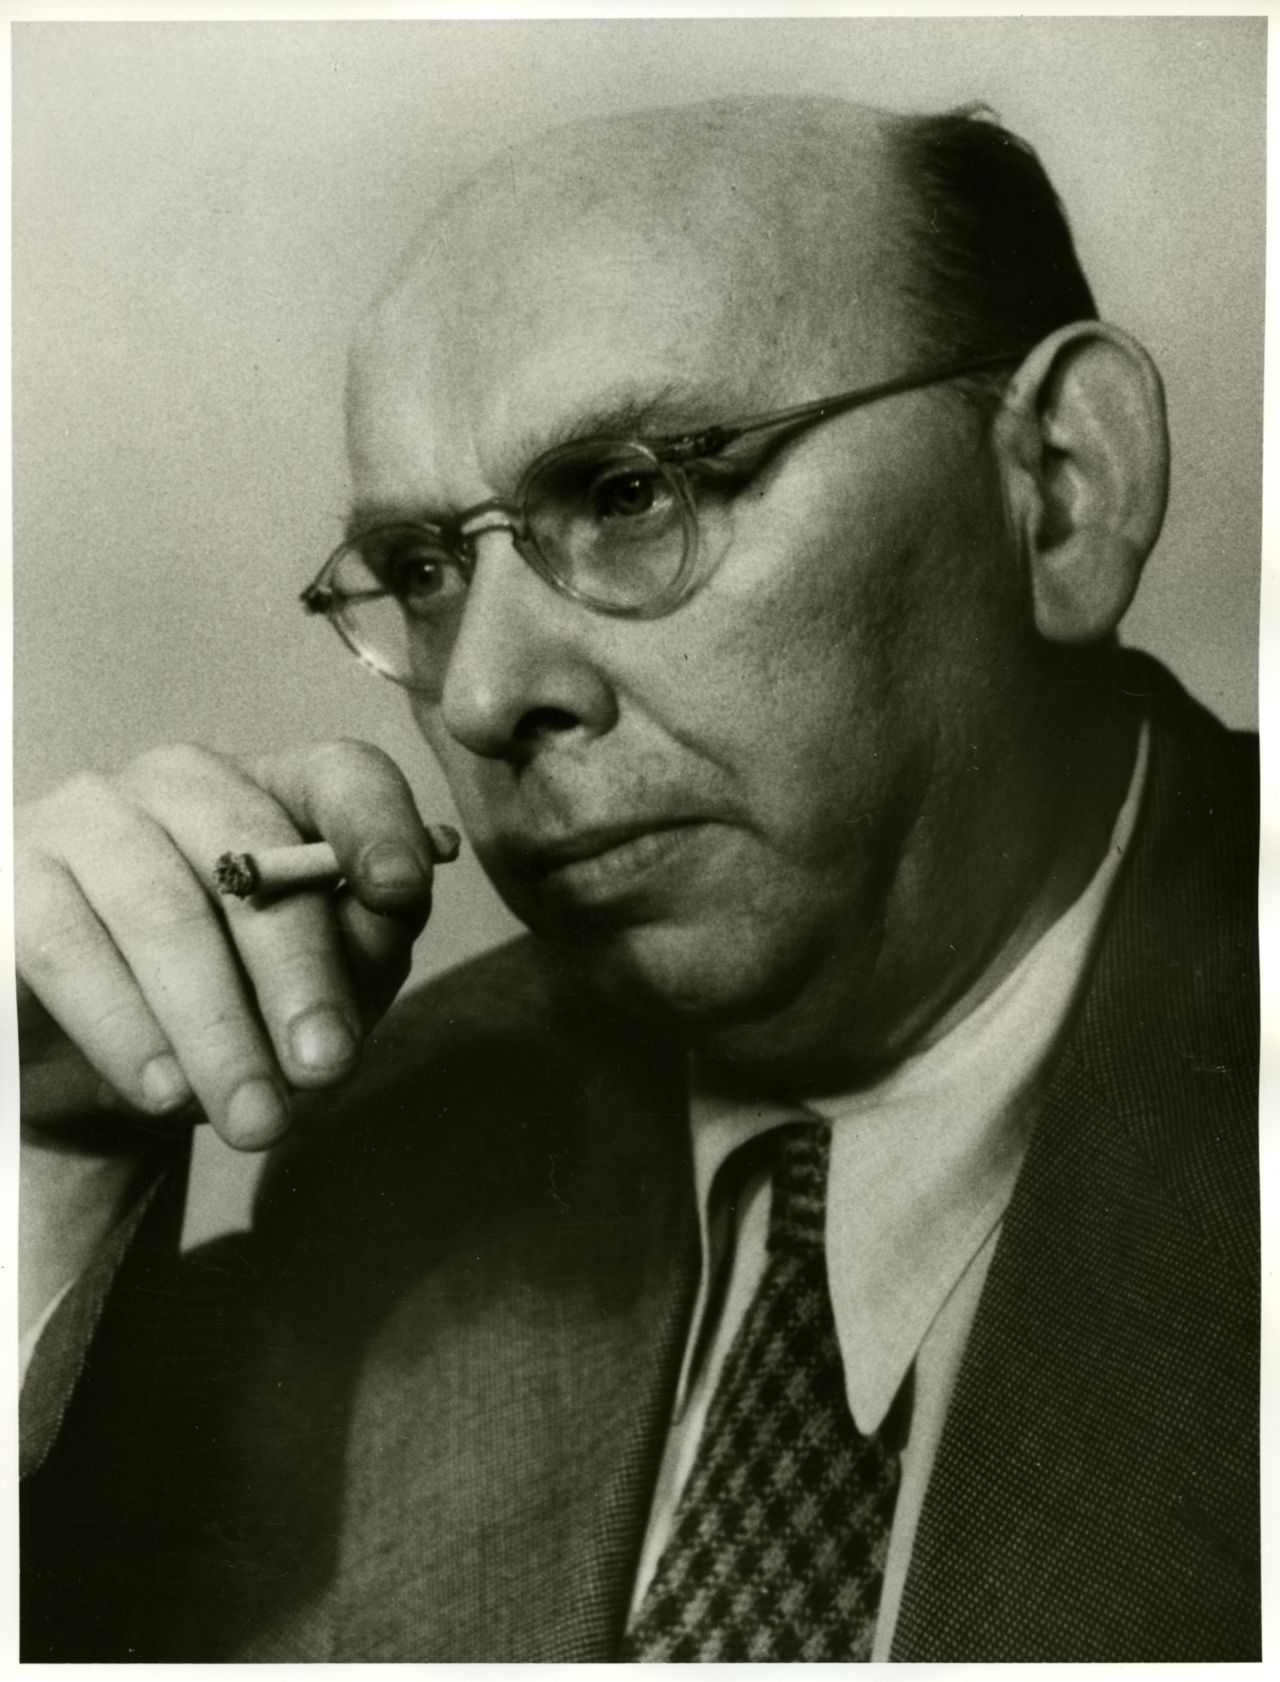 Porträfoto von Hanns Eisler, 1950.